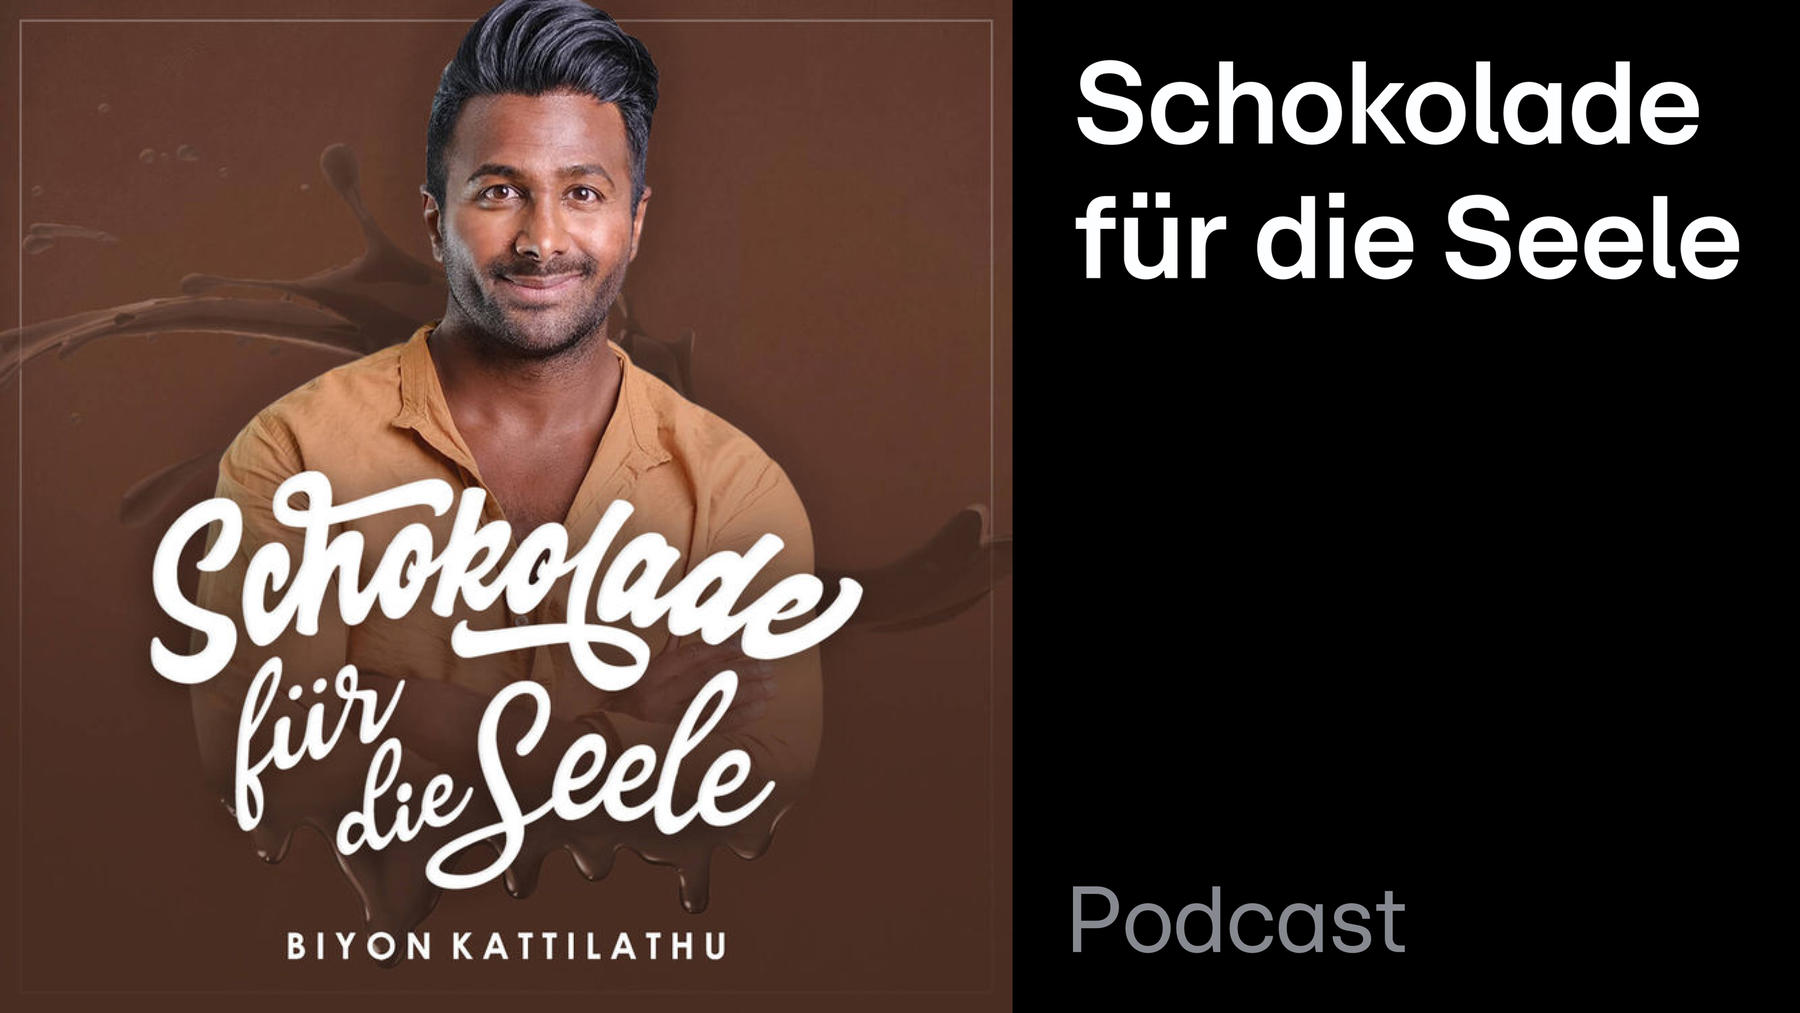 Podcast: Schokolade für die Seele